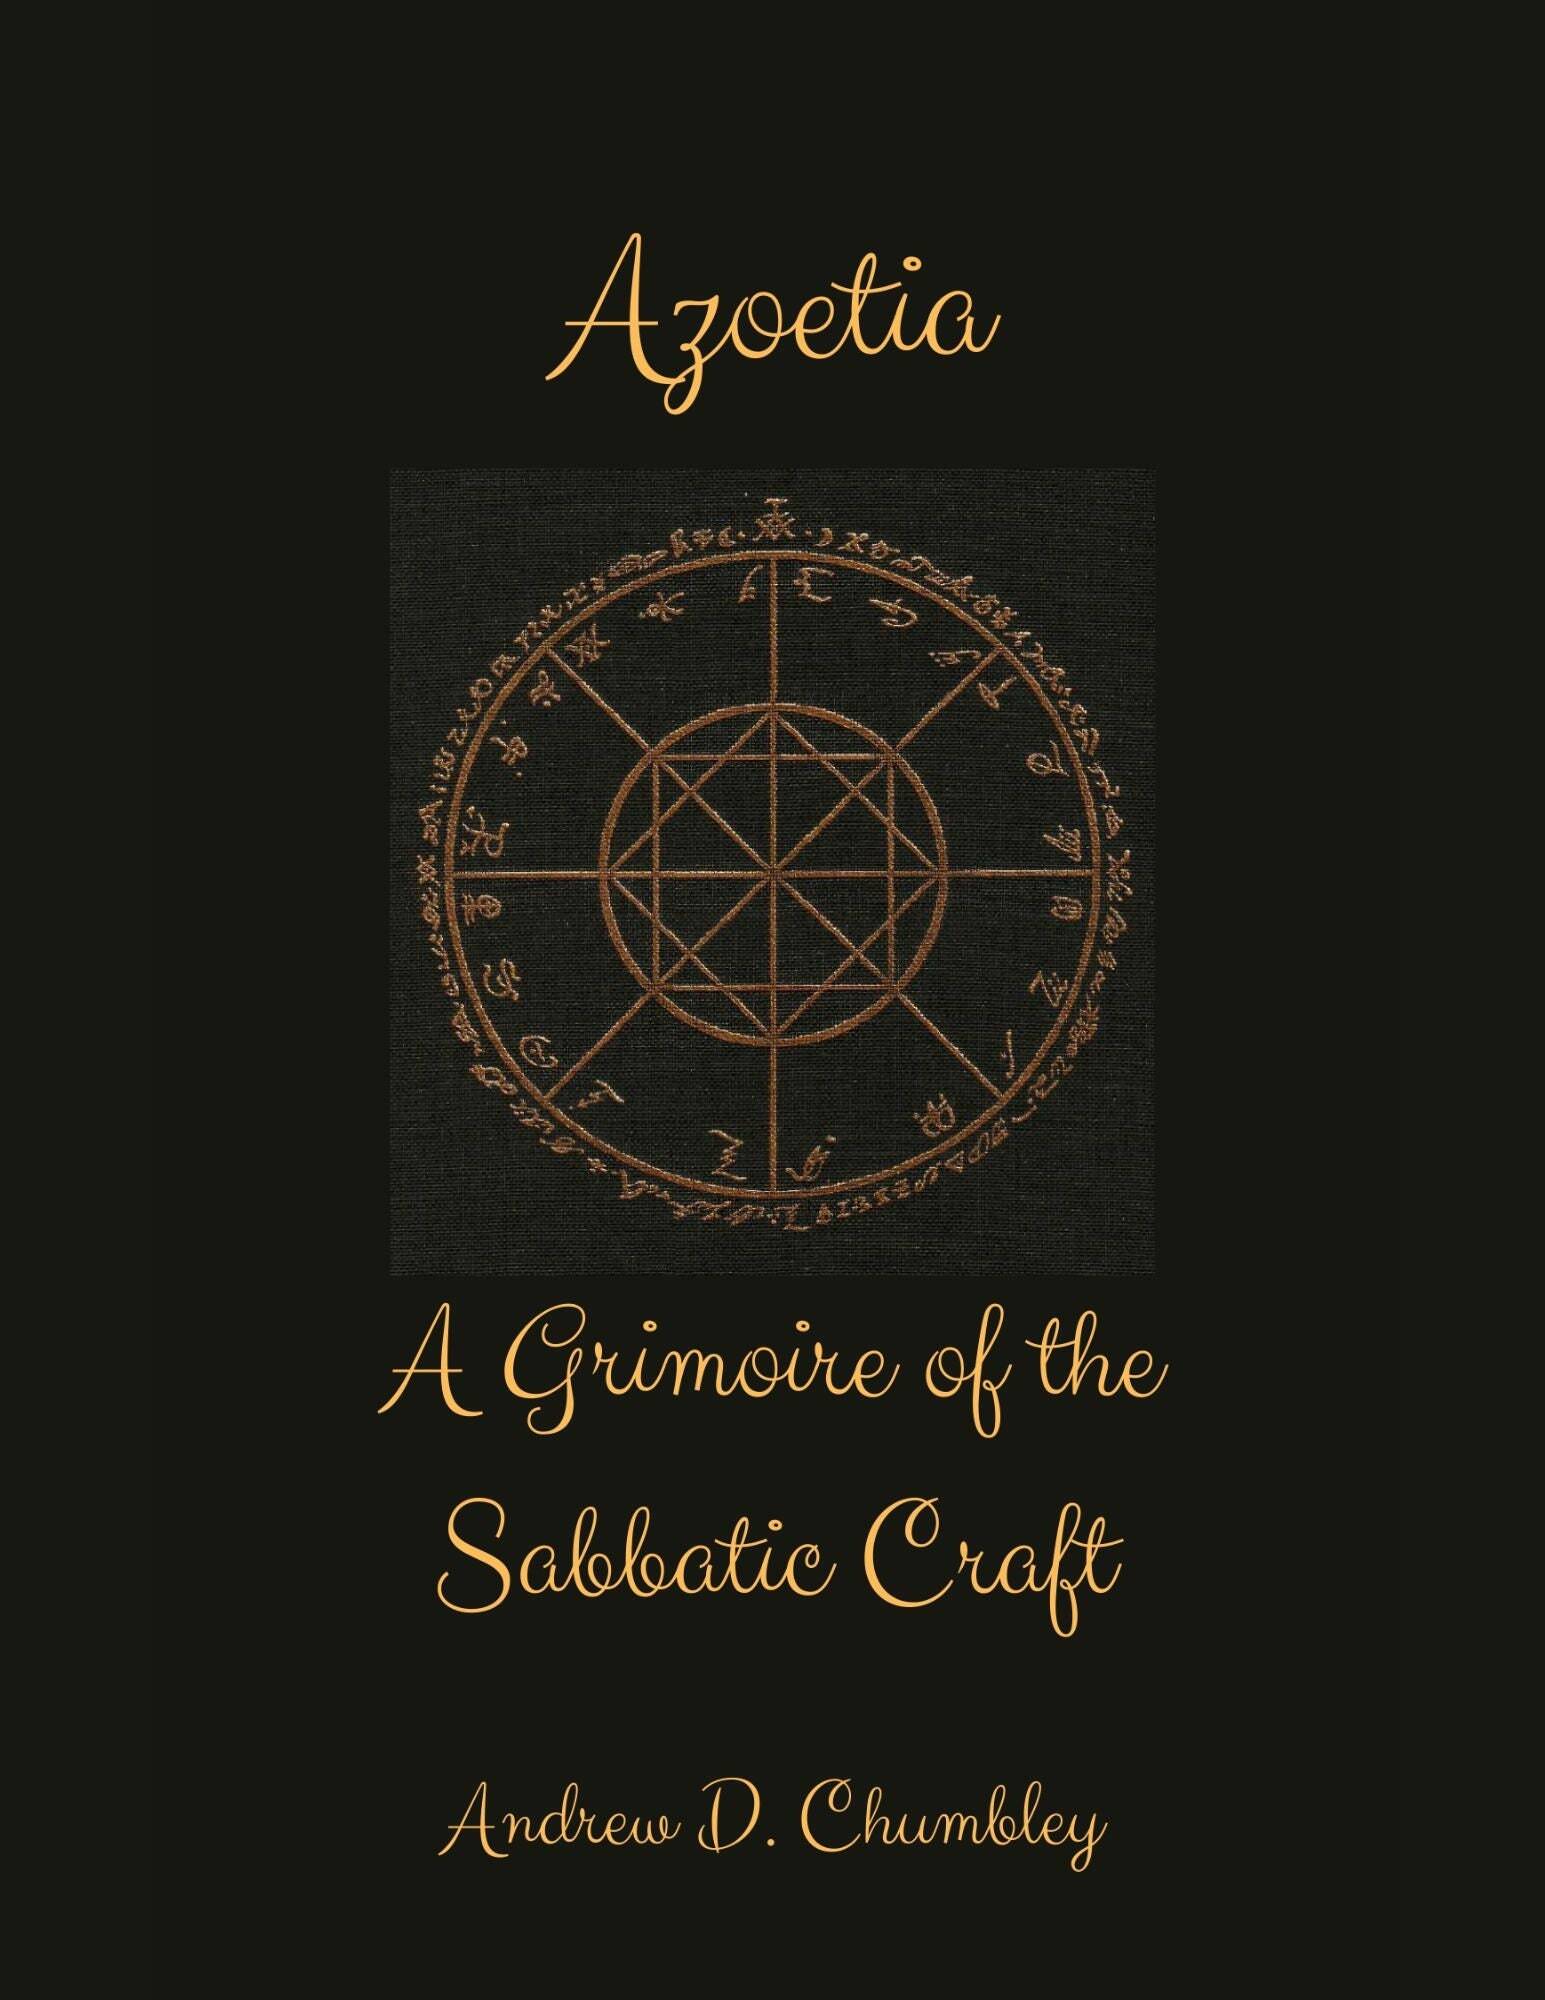 The Azoetia